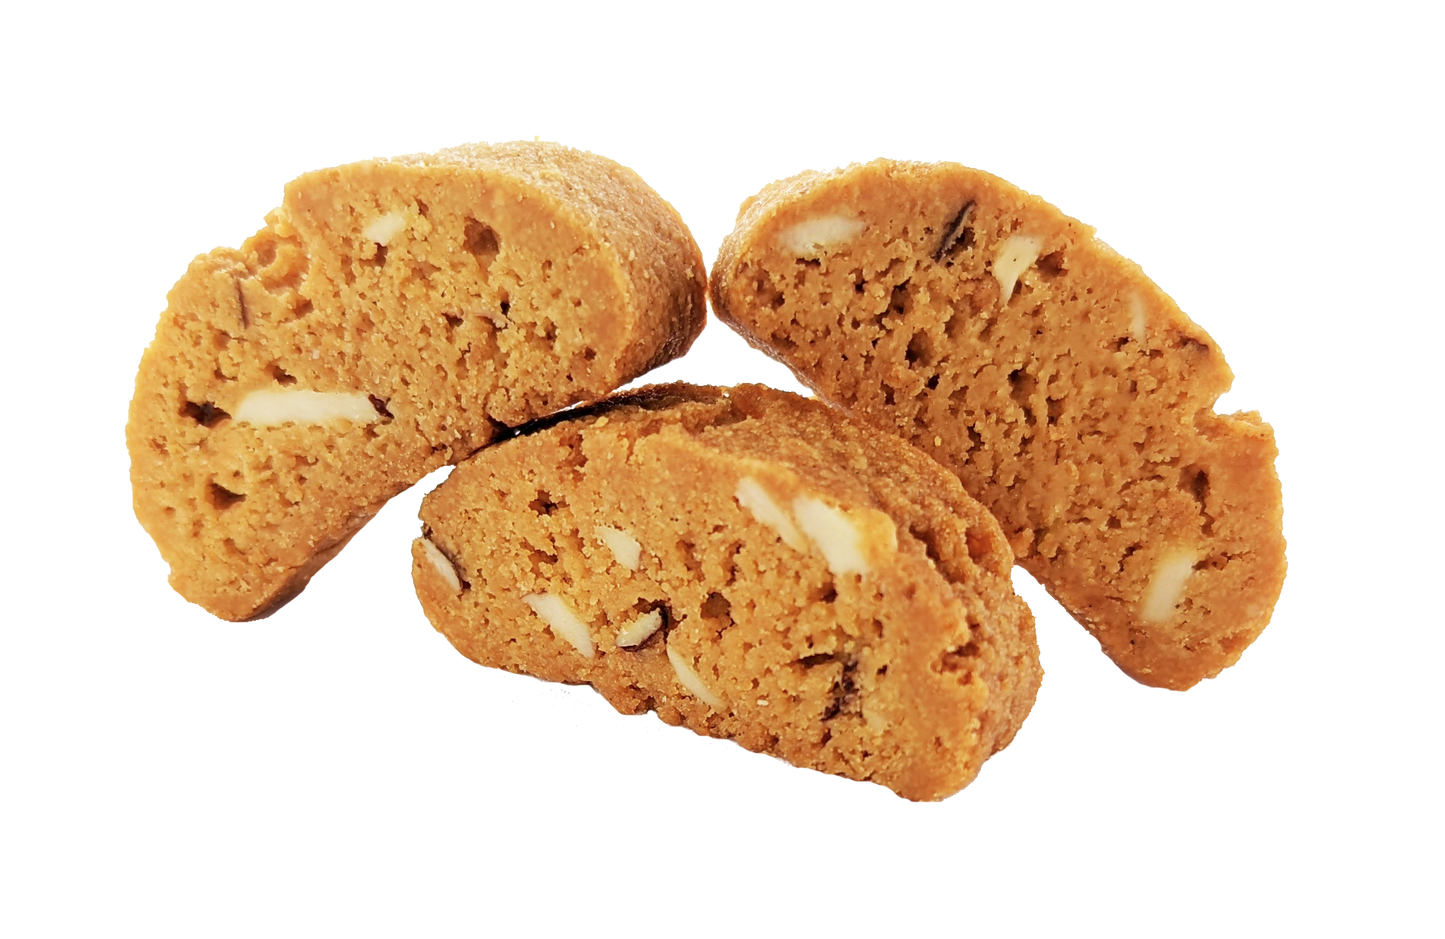 Vegan Gluten-Free Mini Biscotti: Almond Original - 2oz (4 Pack)